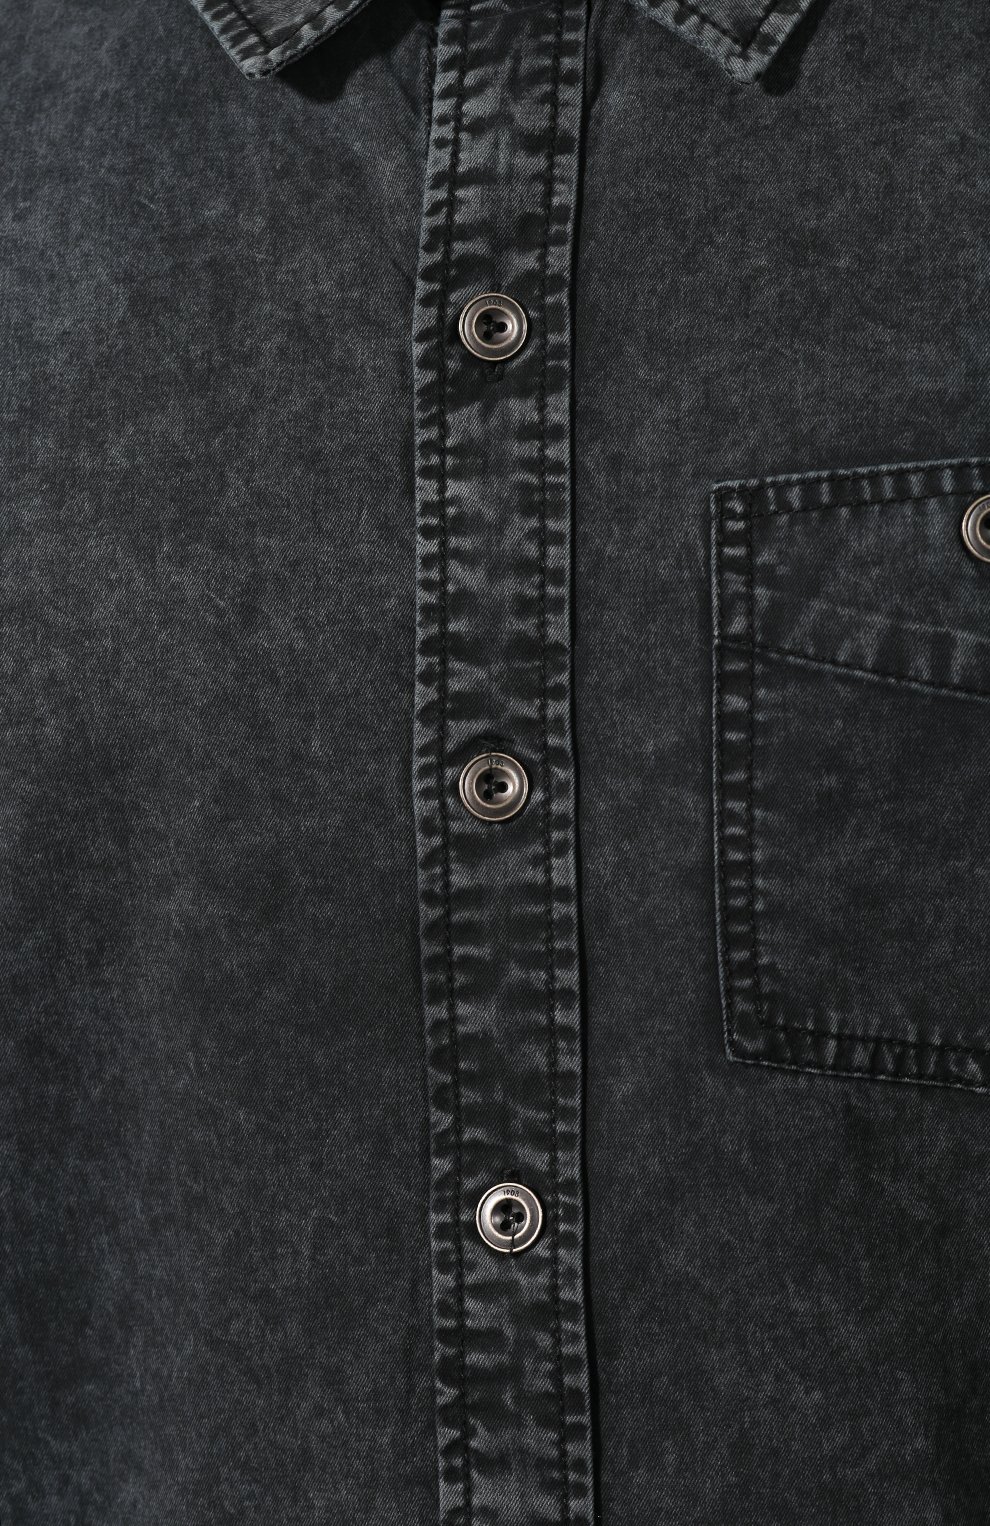 Мужская хлопковая рубашка black label HARLEY-DAVIDSON темно-серого цвета, арт. 96486-16VM | Фото 5 (Манжеты: На пуговицах; Воротник: Кент; Рукава: Длинные; Случай: Повседневный; Длина (для топов): Стандартные; Материал внешний: Хлопок; Принт: Однотонные)